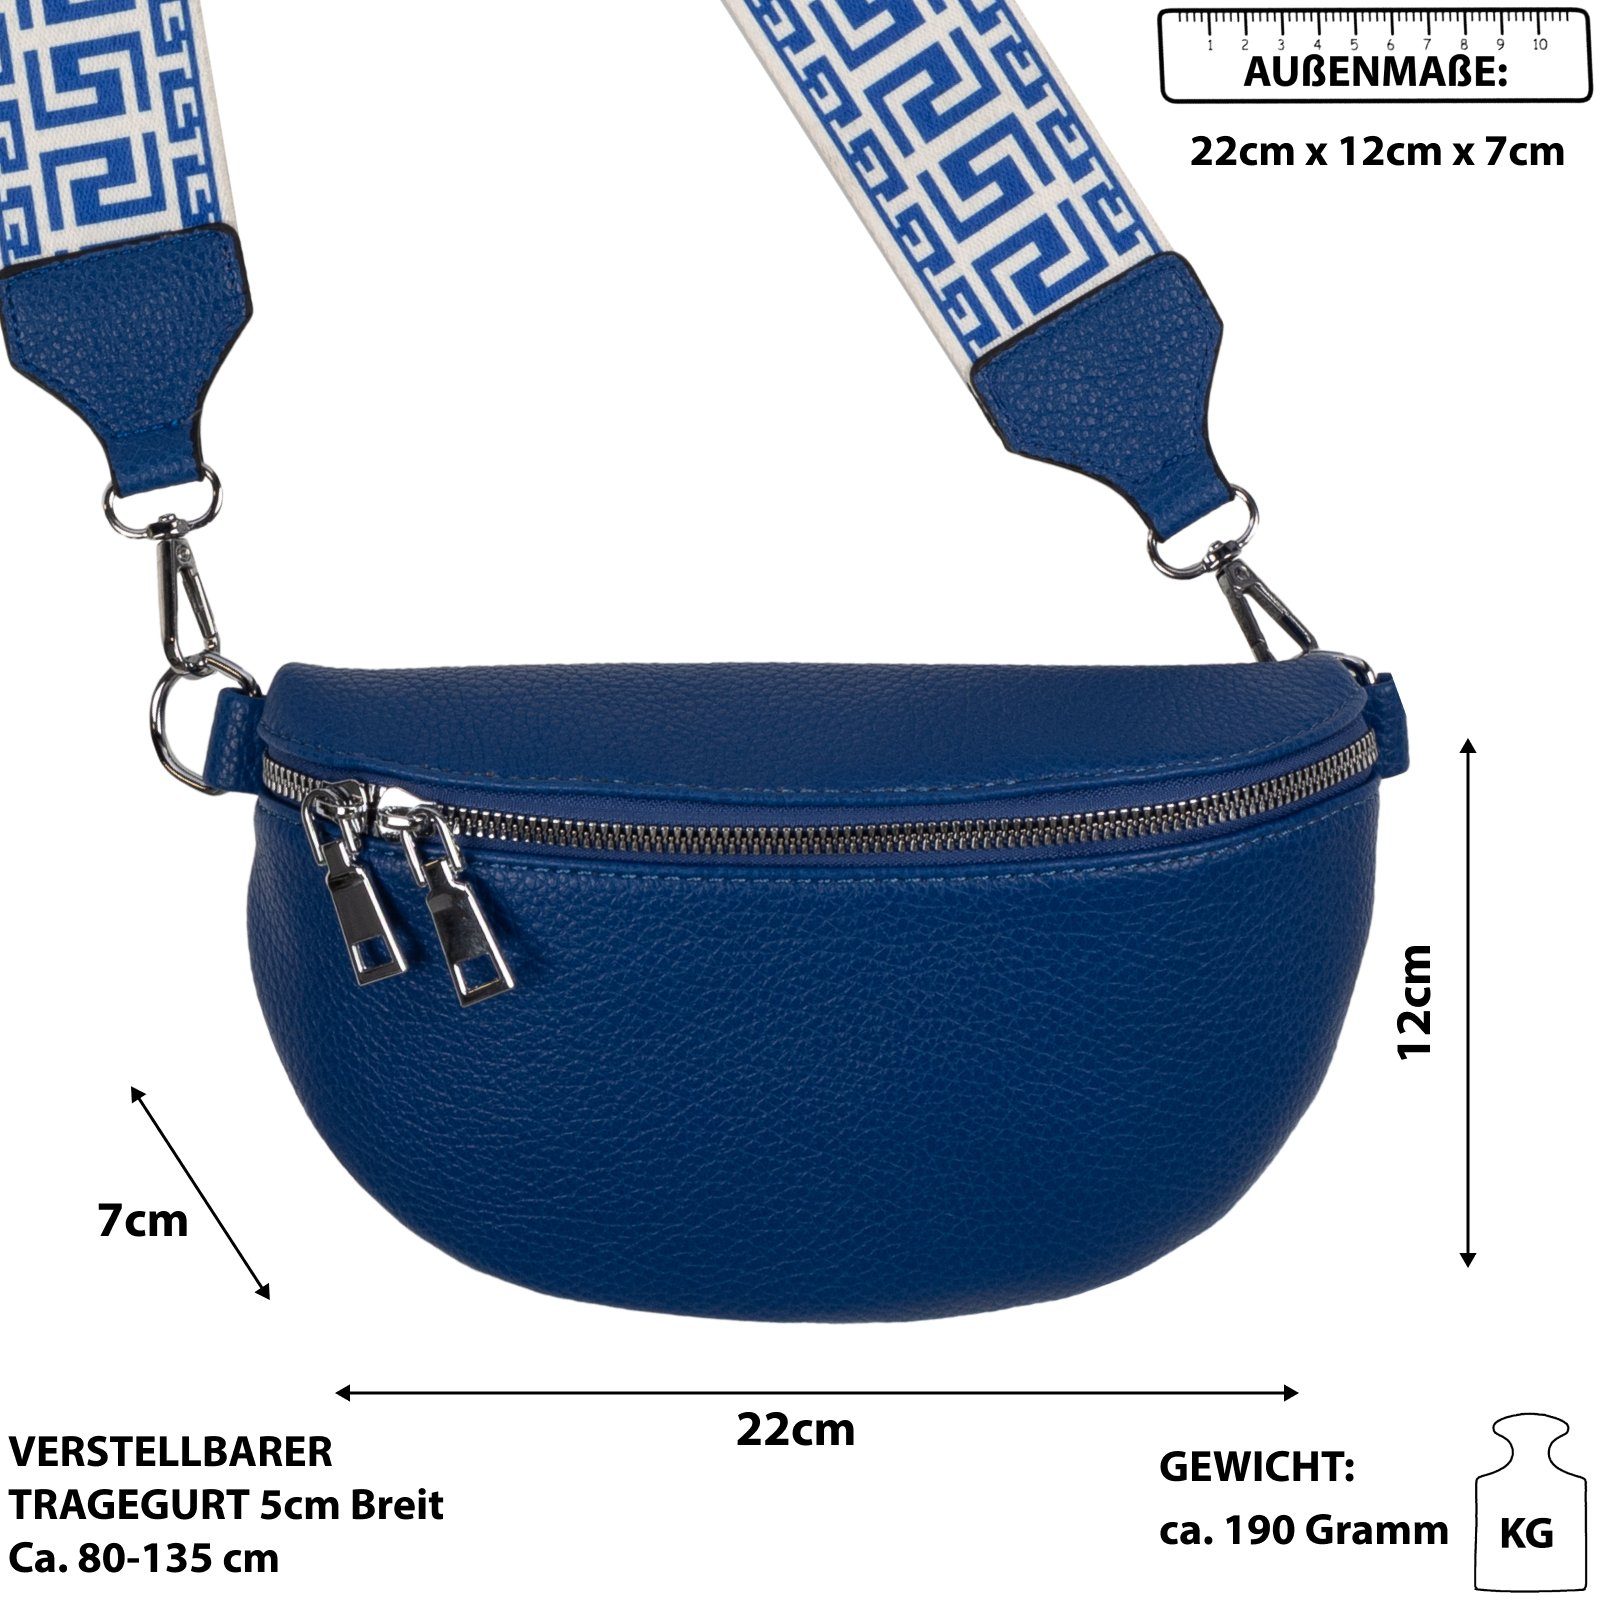 EAAKIE Gürteltasche Kunstleder Italy-De, als Bauchtasche Schultertasche, Umhängetasche Hüfttasche BLUE tragbar CrossOver, Crossbody-Bag Umhängetasche